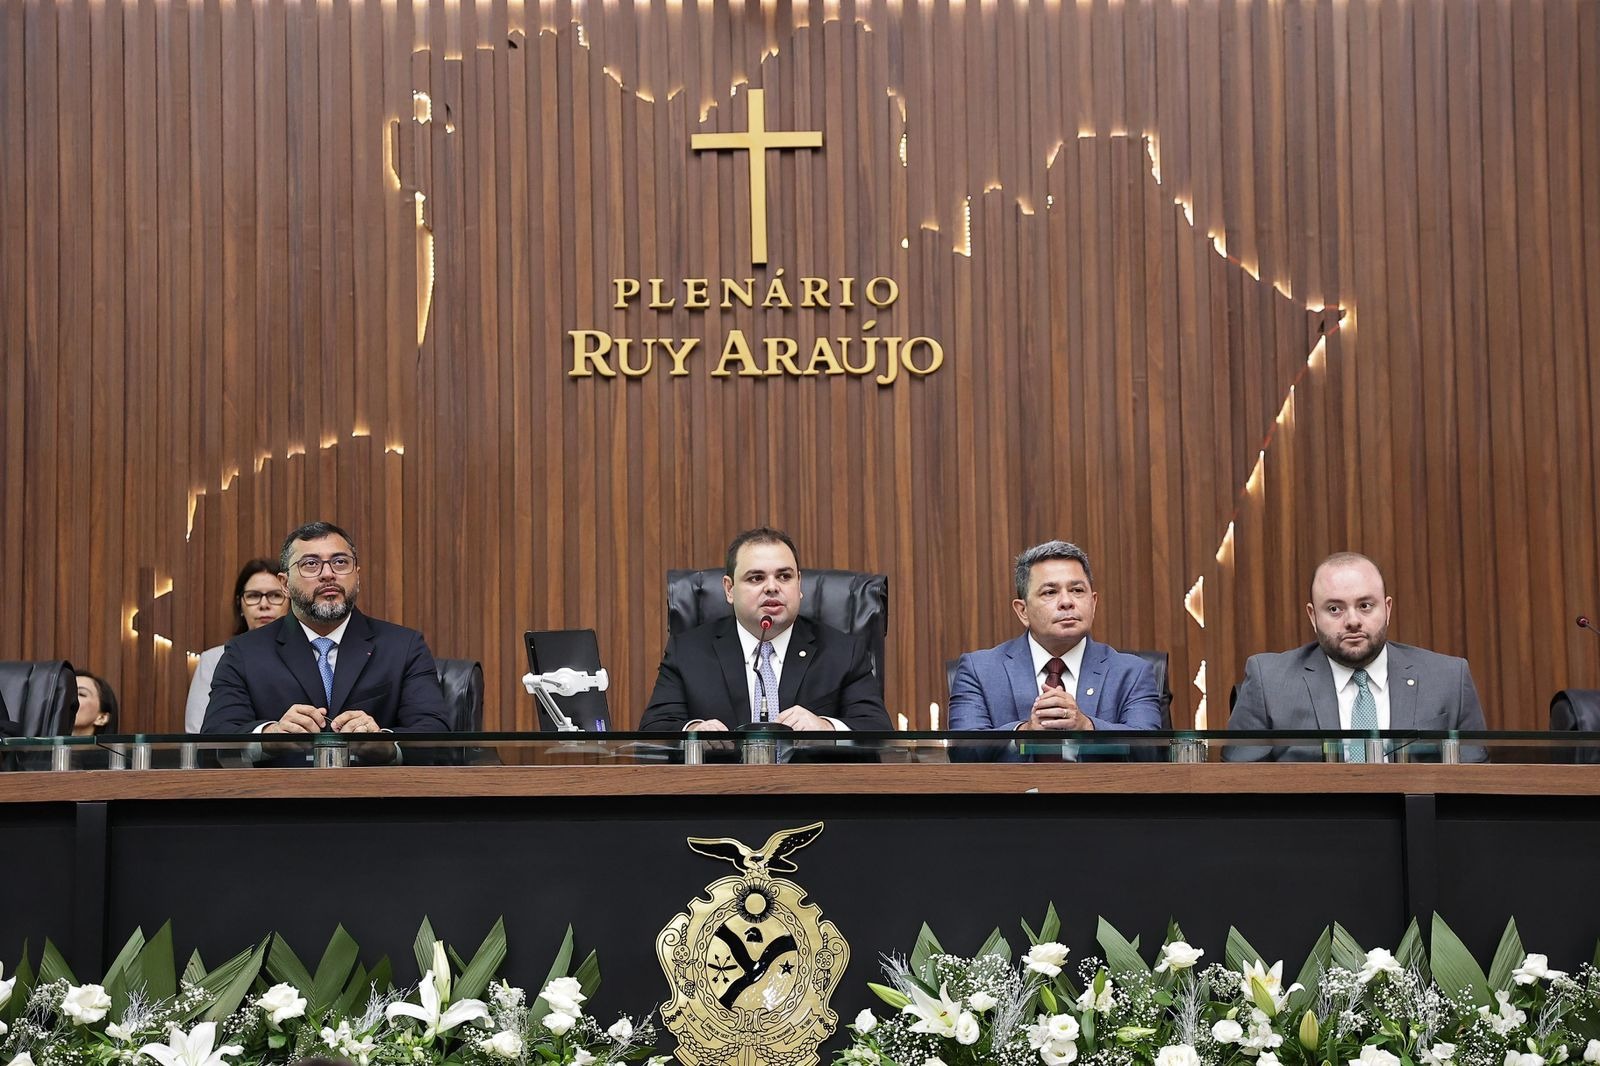 Governador Wilson Lima, deputado Roberto Cidade, vice-governador Tadeu de Souza e secretário Fausto Jr., na cerimônia de abertura do ano legislativo (Foto: Aleam)